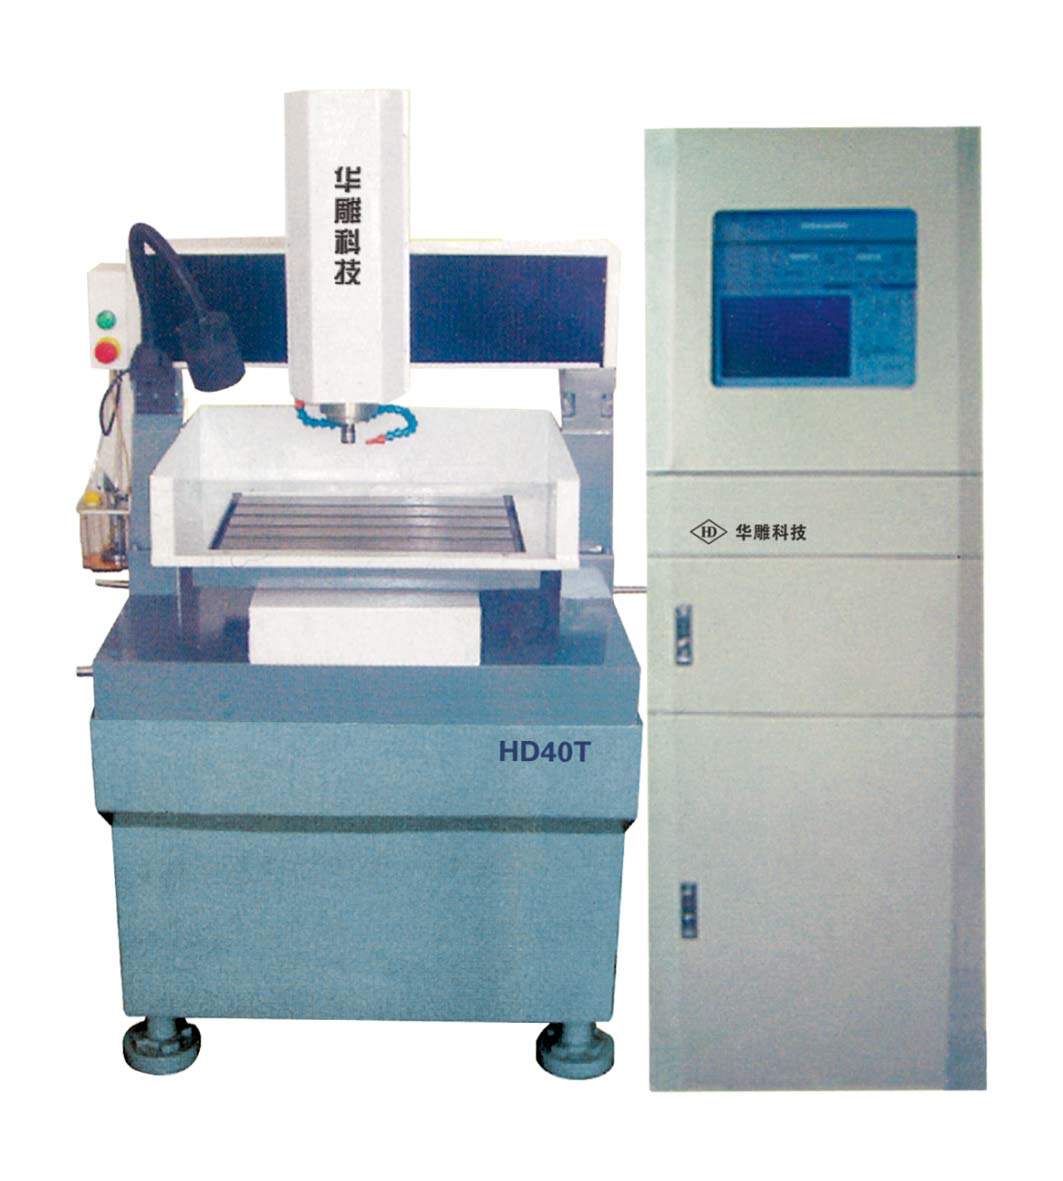 HD40T die engraving machine